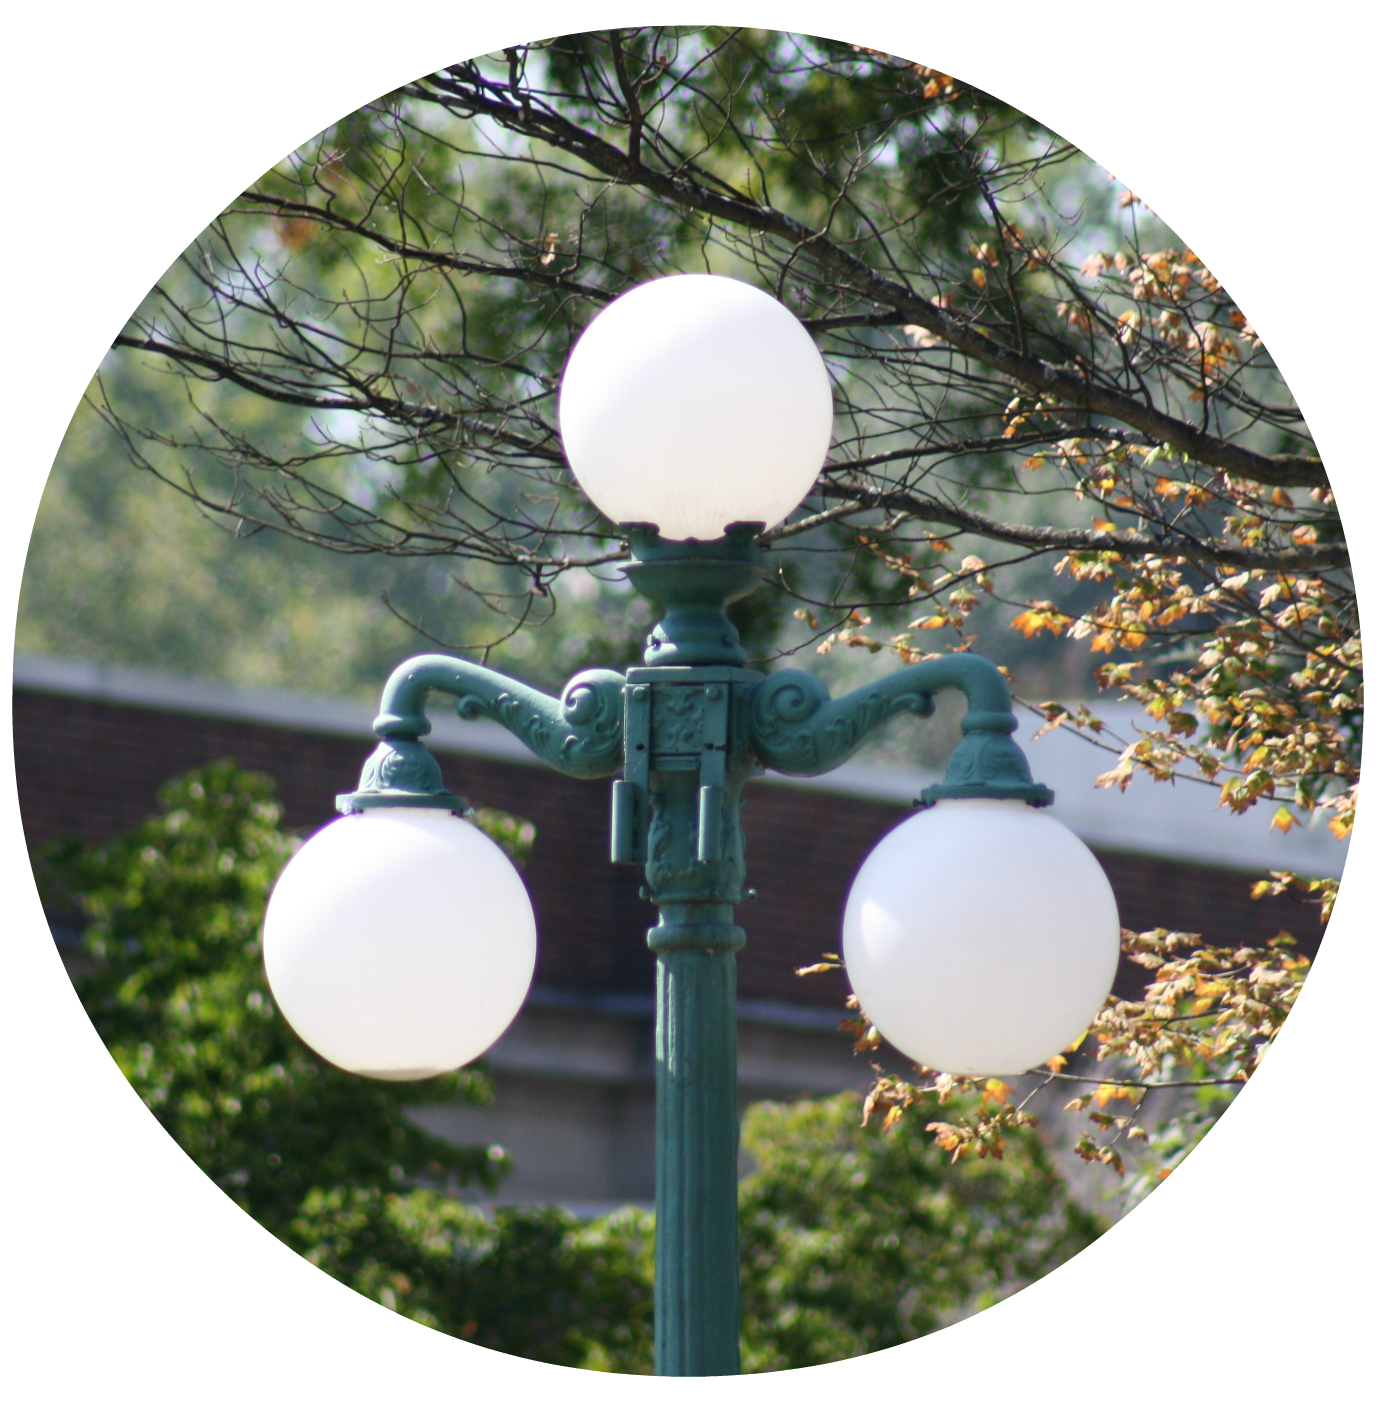 lewisburg lamp post